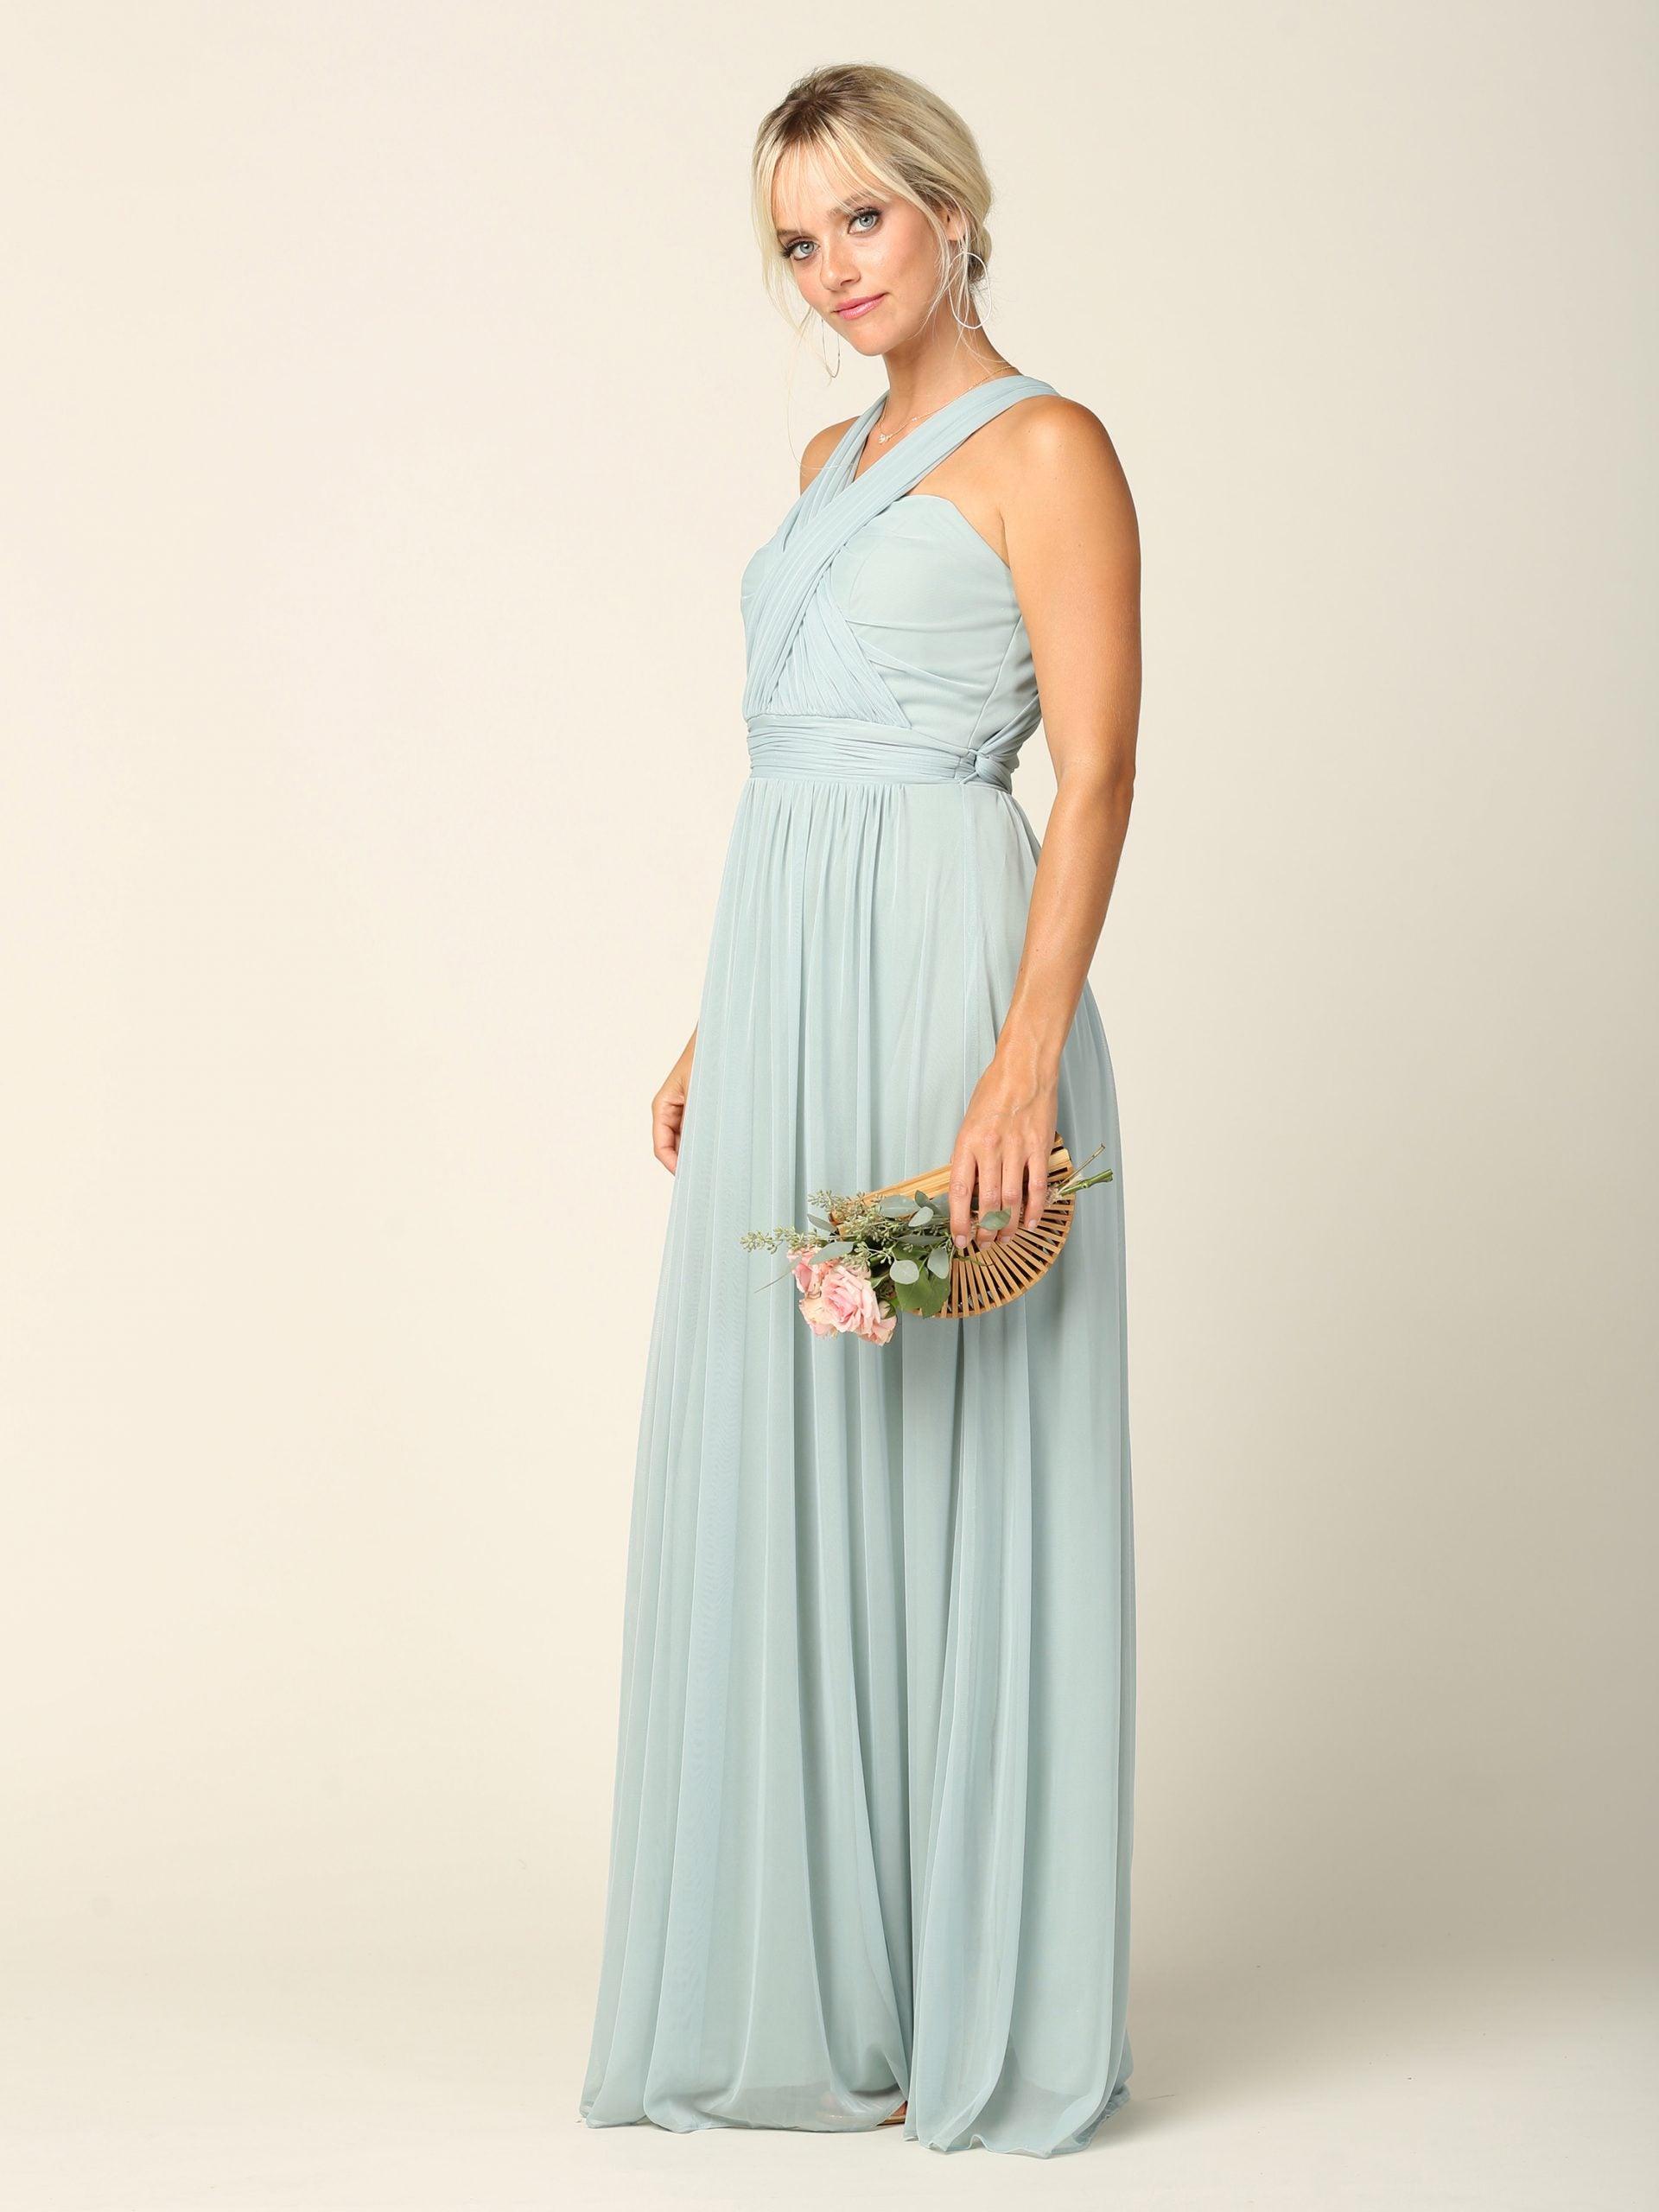 Sleeveless Convertible Long Bridesmaids Dress - The Dress Outlet